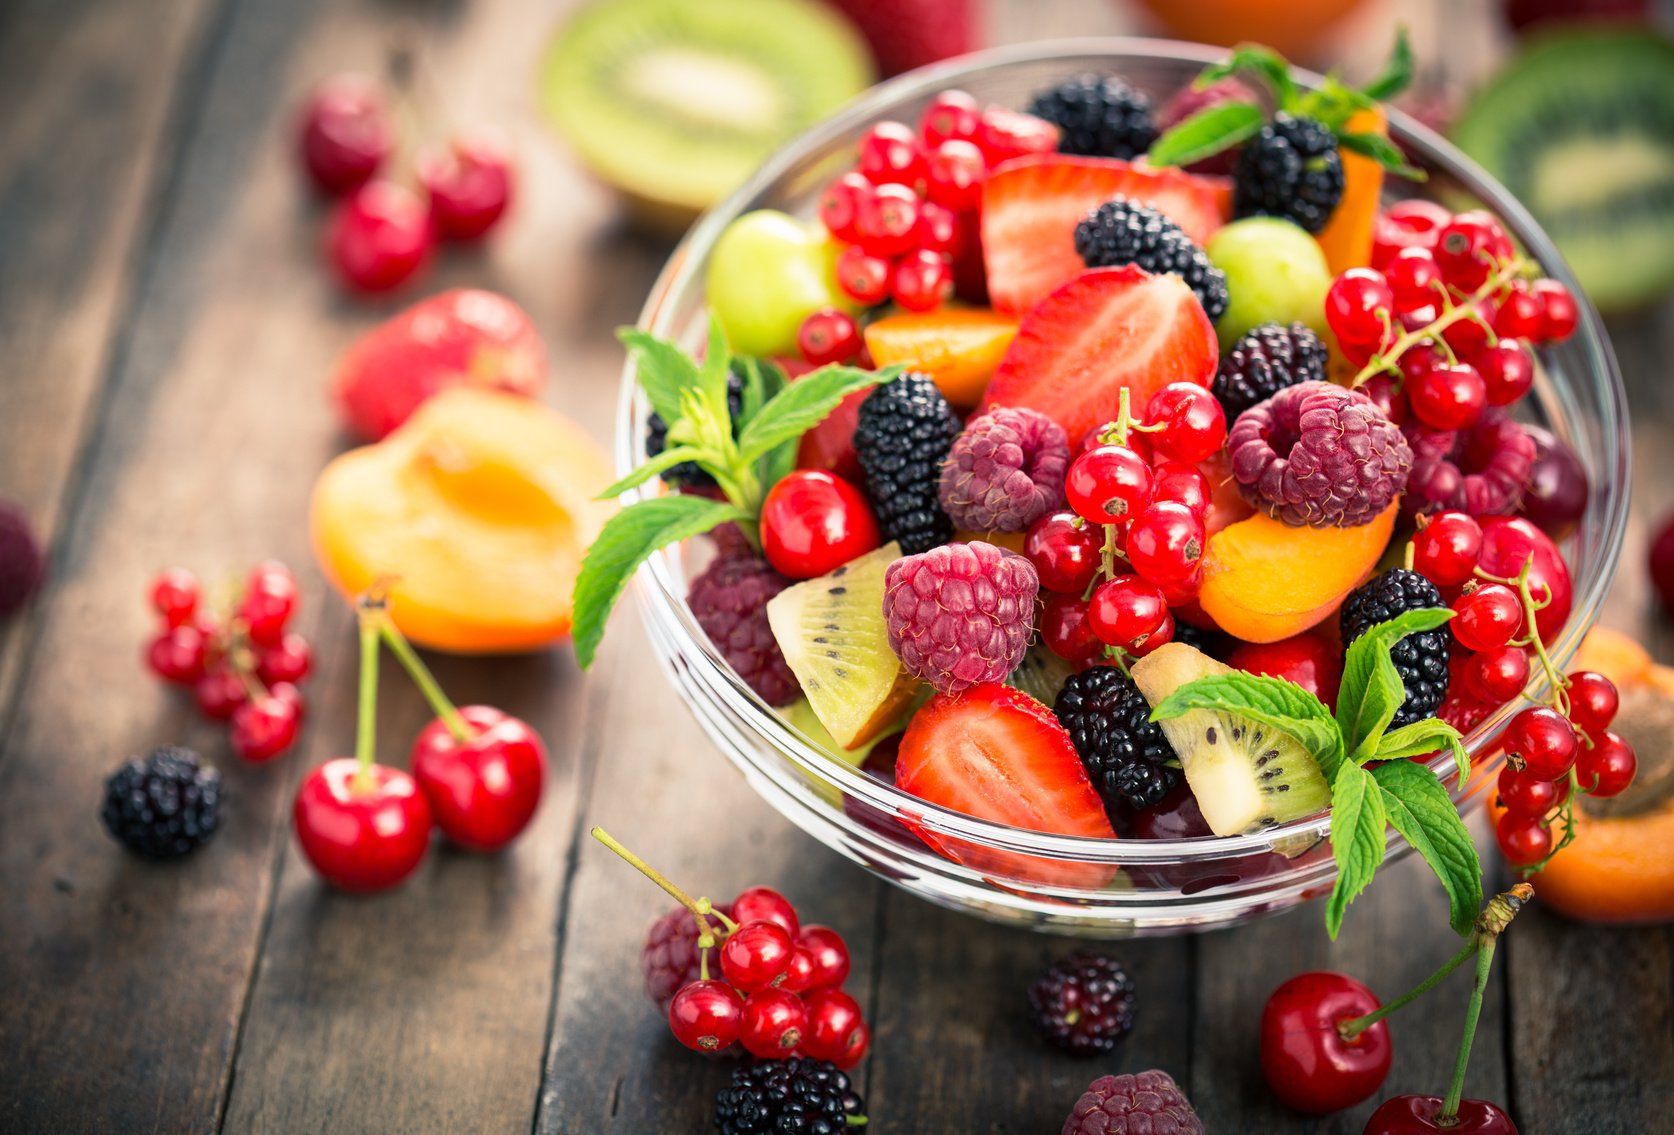 Jenis Buah-buahan yang Paling Sehat, Menurut Kebutuhan Anda